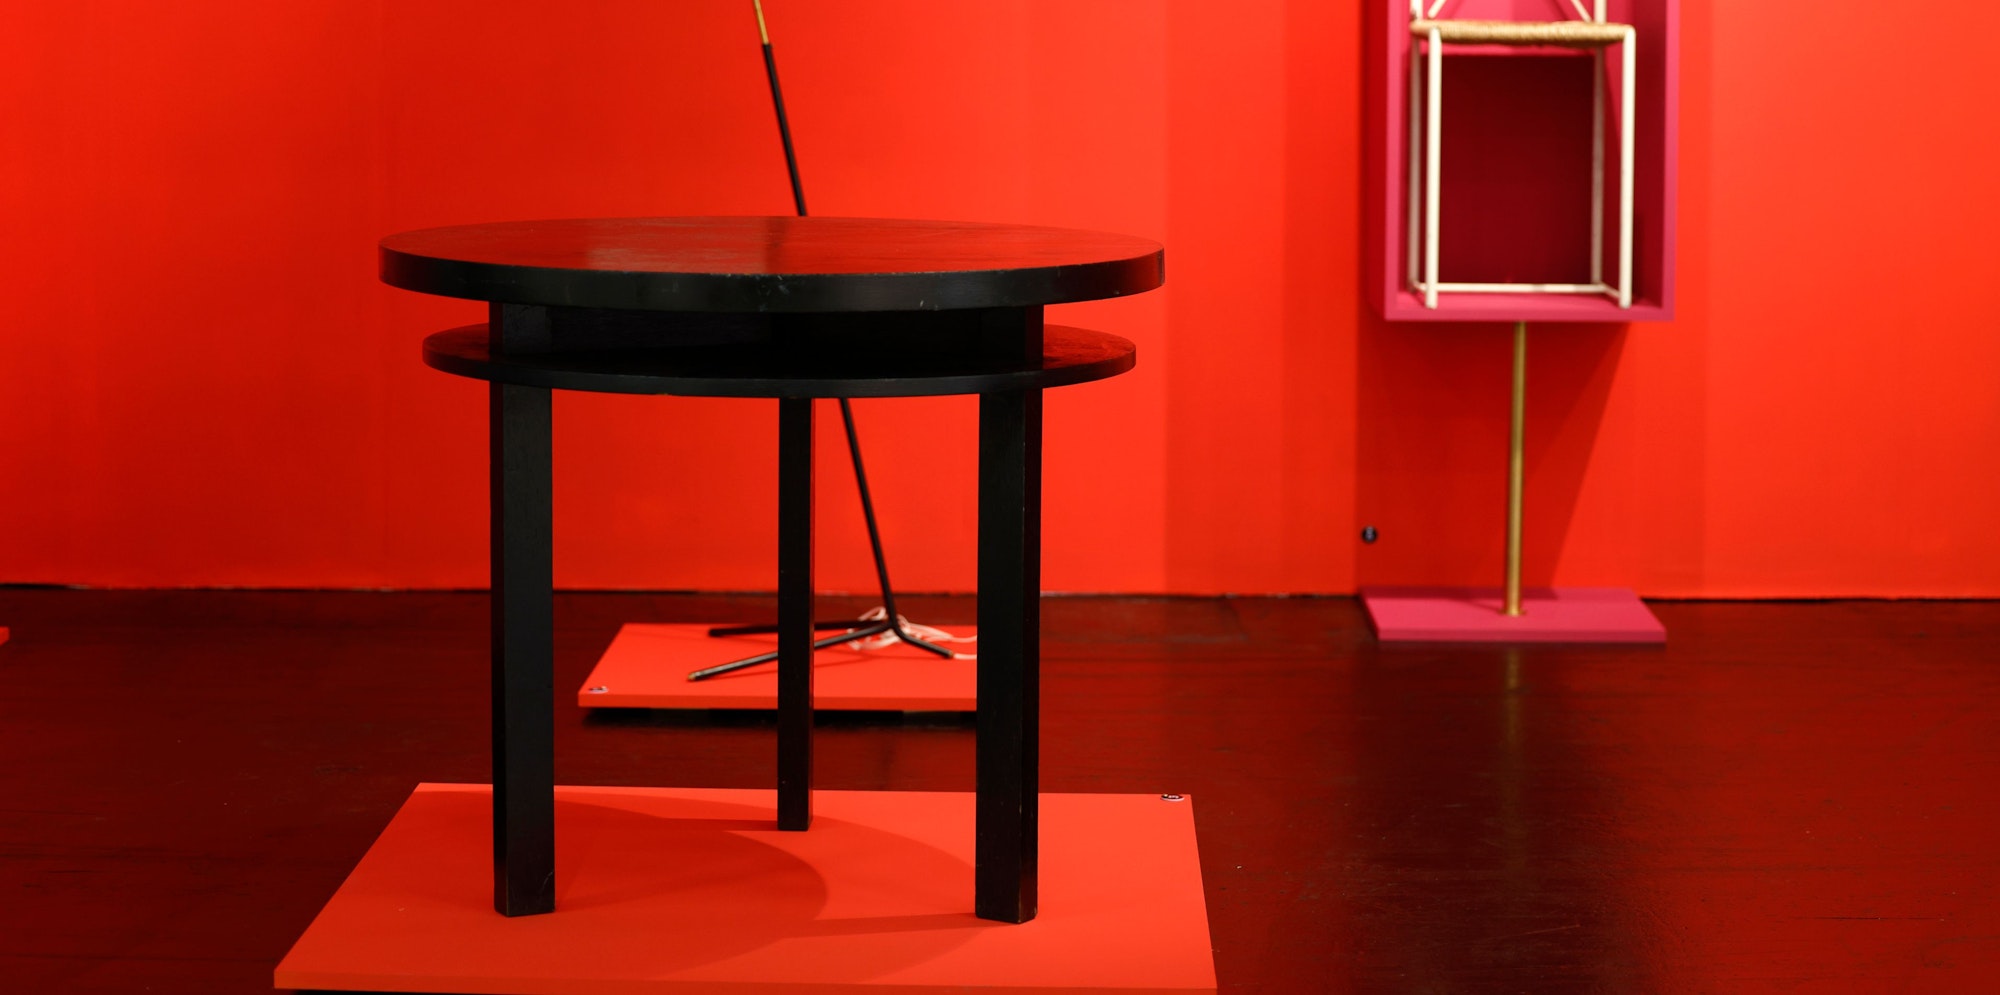 Auf der "Art + Objekt" in der Messehalle 11.1 kombiniert Kurator Sebastian Jacobi einen Bauhaustisch mit einer Stehlampe von Vico Magistretti.